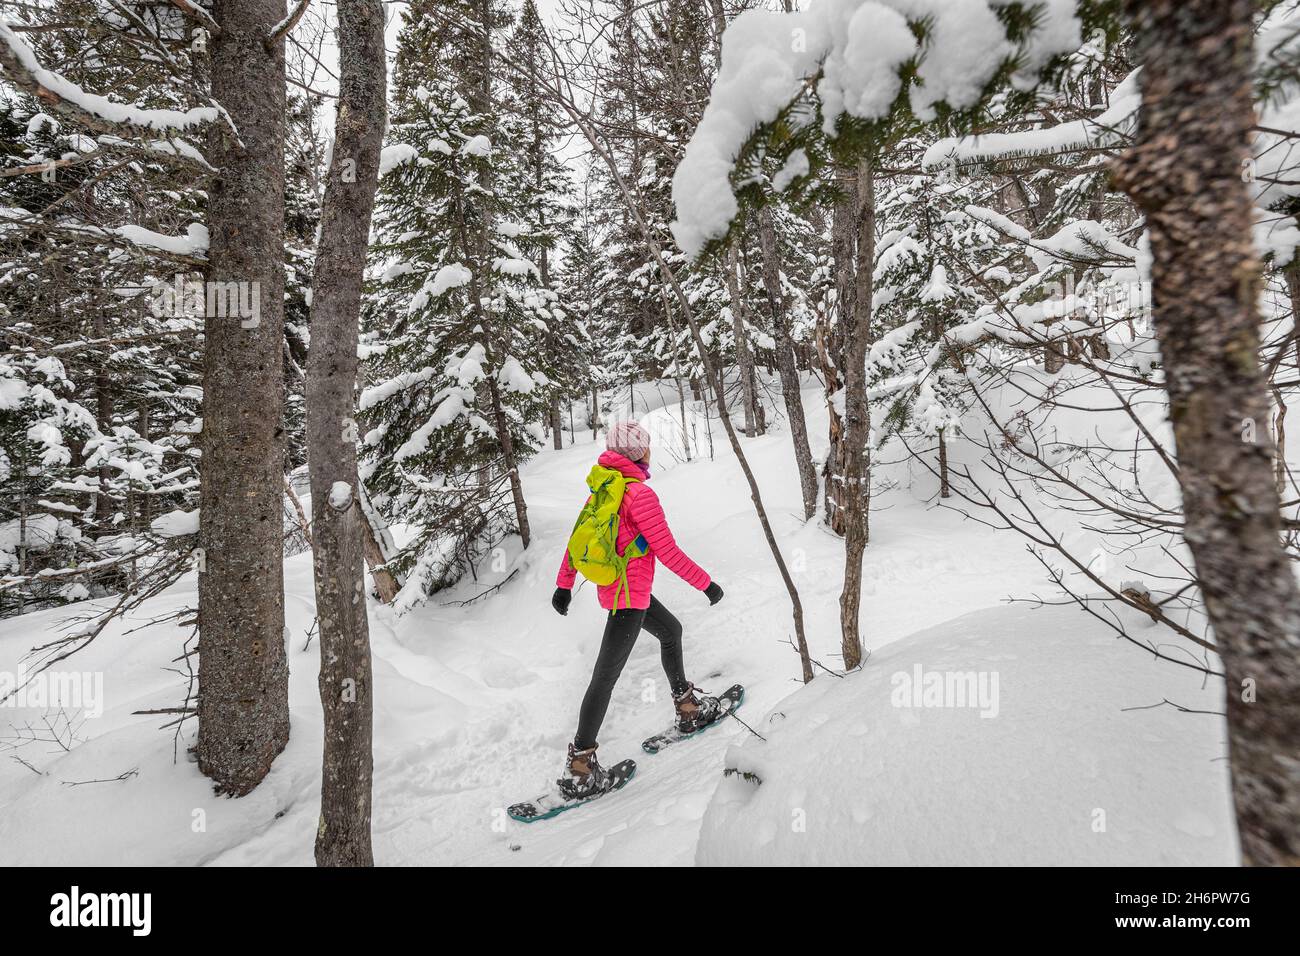 Raquette sur les gens dans la forêt d'hiver avec des arbres couverts de neige le jour de neige.Femme en randonnée dans la neige randonnée en raquettes vivant en plein air actif sain Banque D'Images